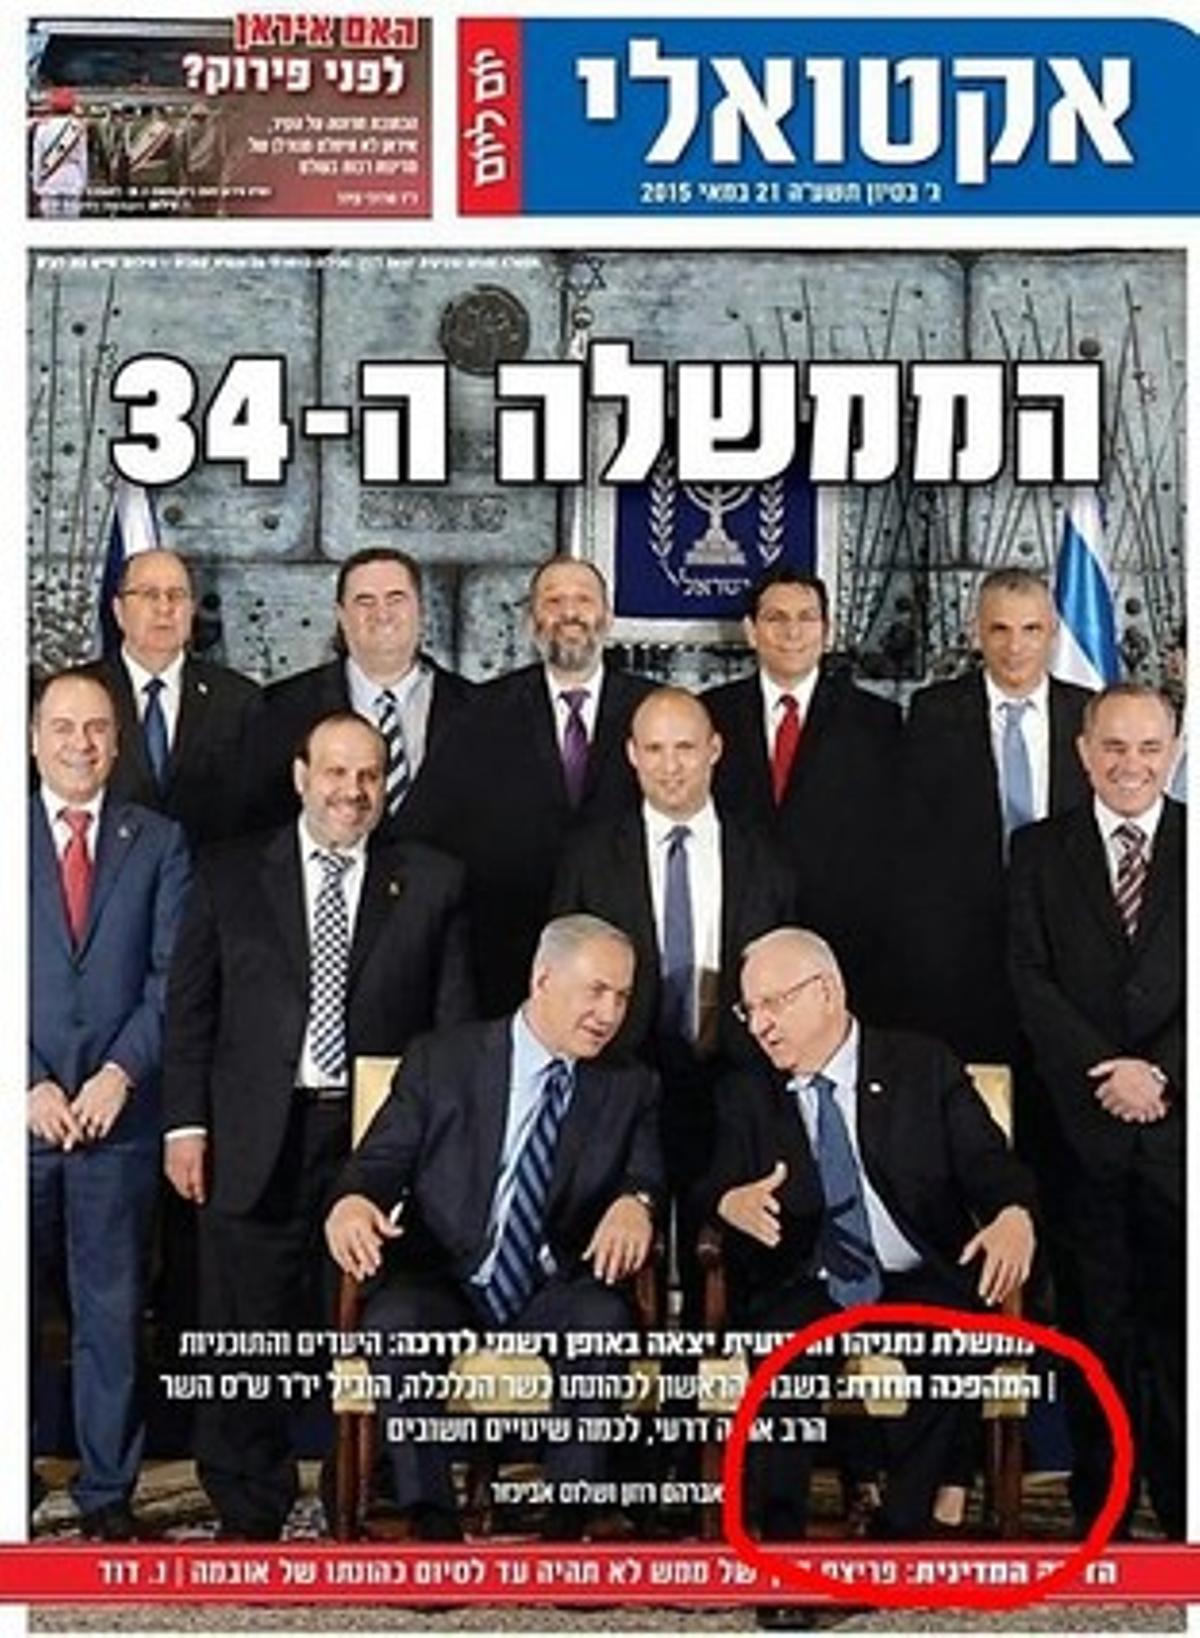 Portada del diario ultraortodoxo israelí ’Yom Le Yom’ en que, en un círculo rojo, se ve las piernas de una ministra cuya parte superior del cuerpo fue borrada de la imagen.